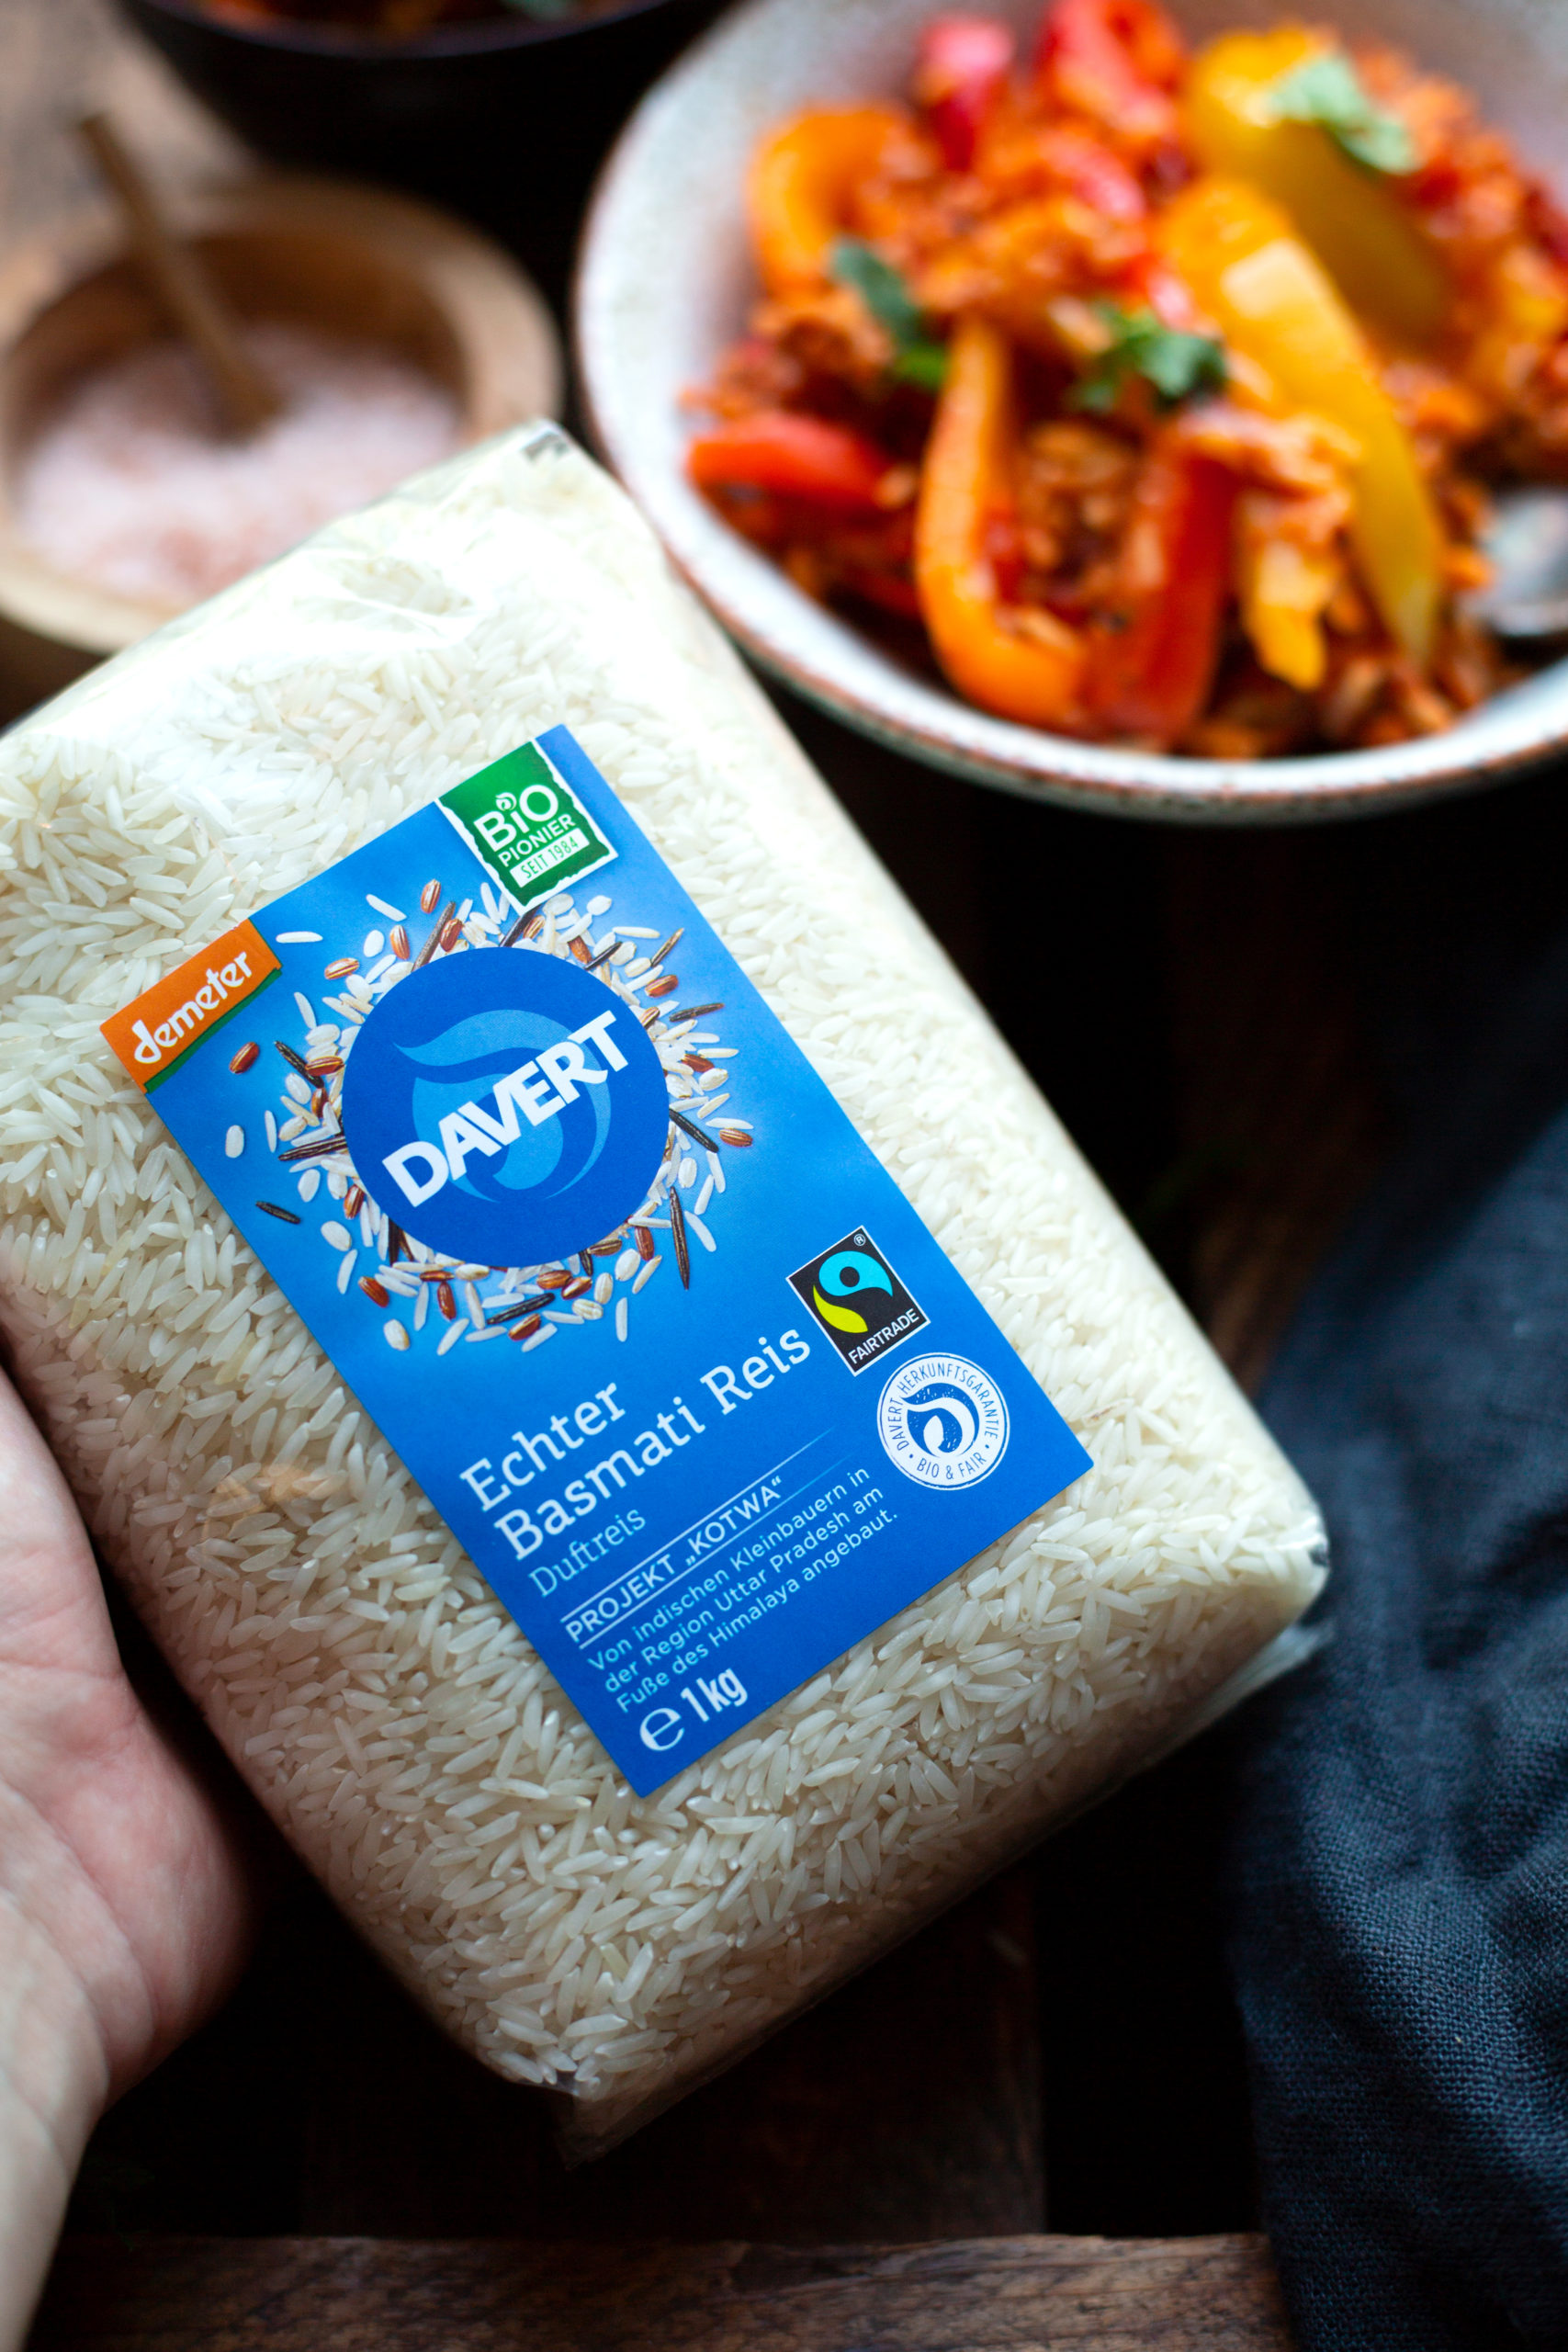 Werbung. Produktfotografie Davert Basmatireis. Im Hintergrund eine vegetarische Paprika-Reispfanne mit Hackfleisch in hellen Schüsseln.